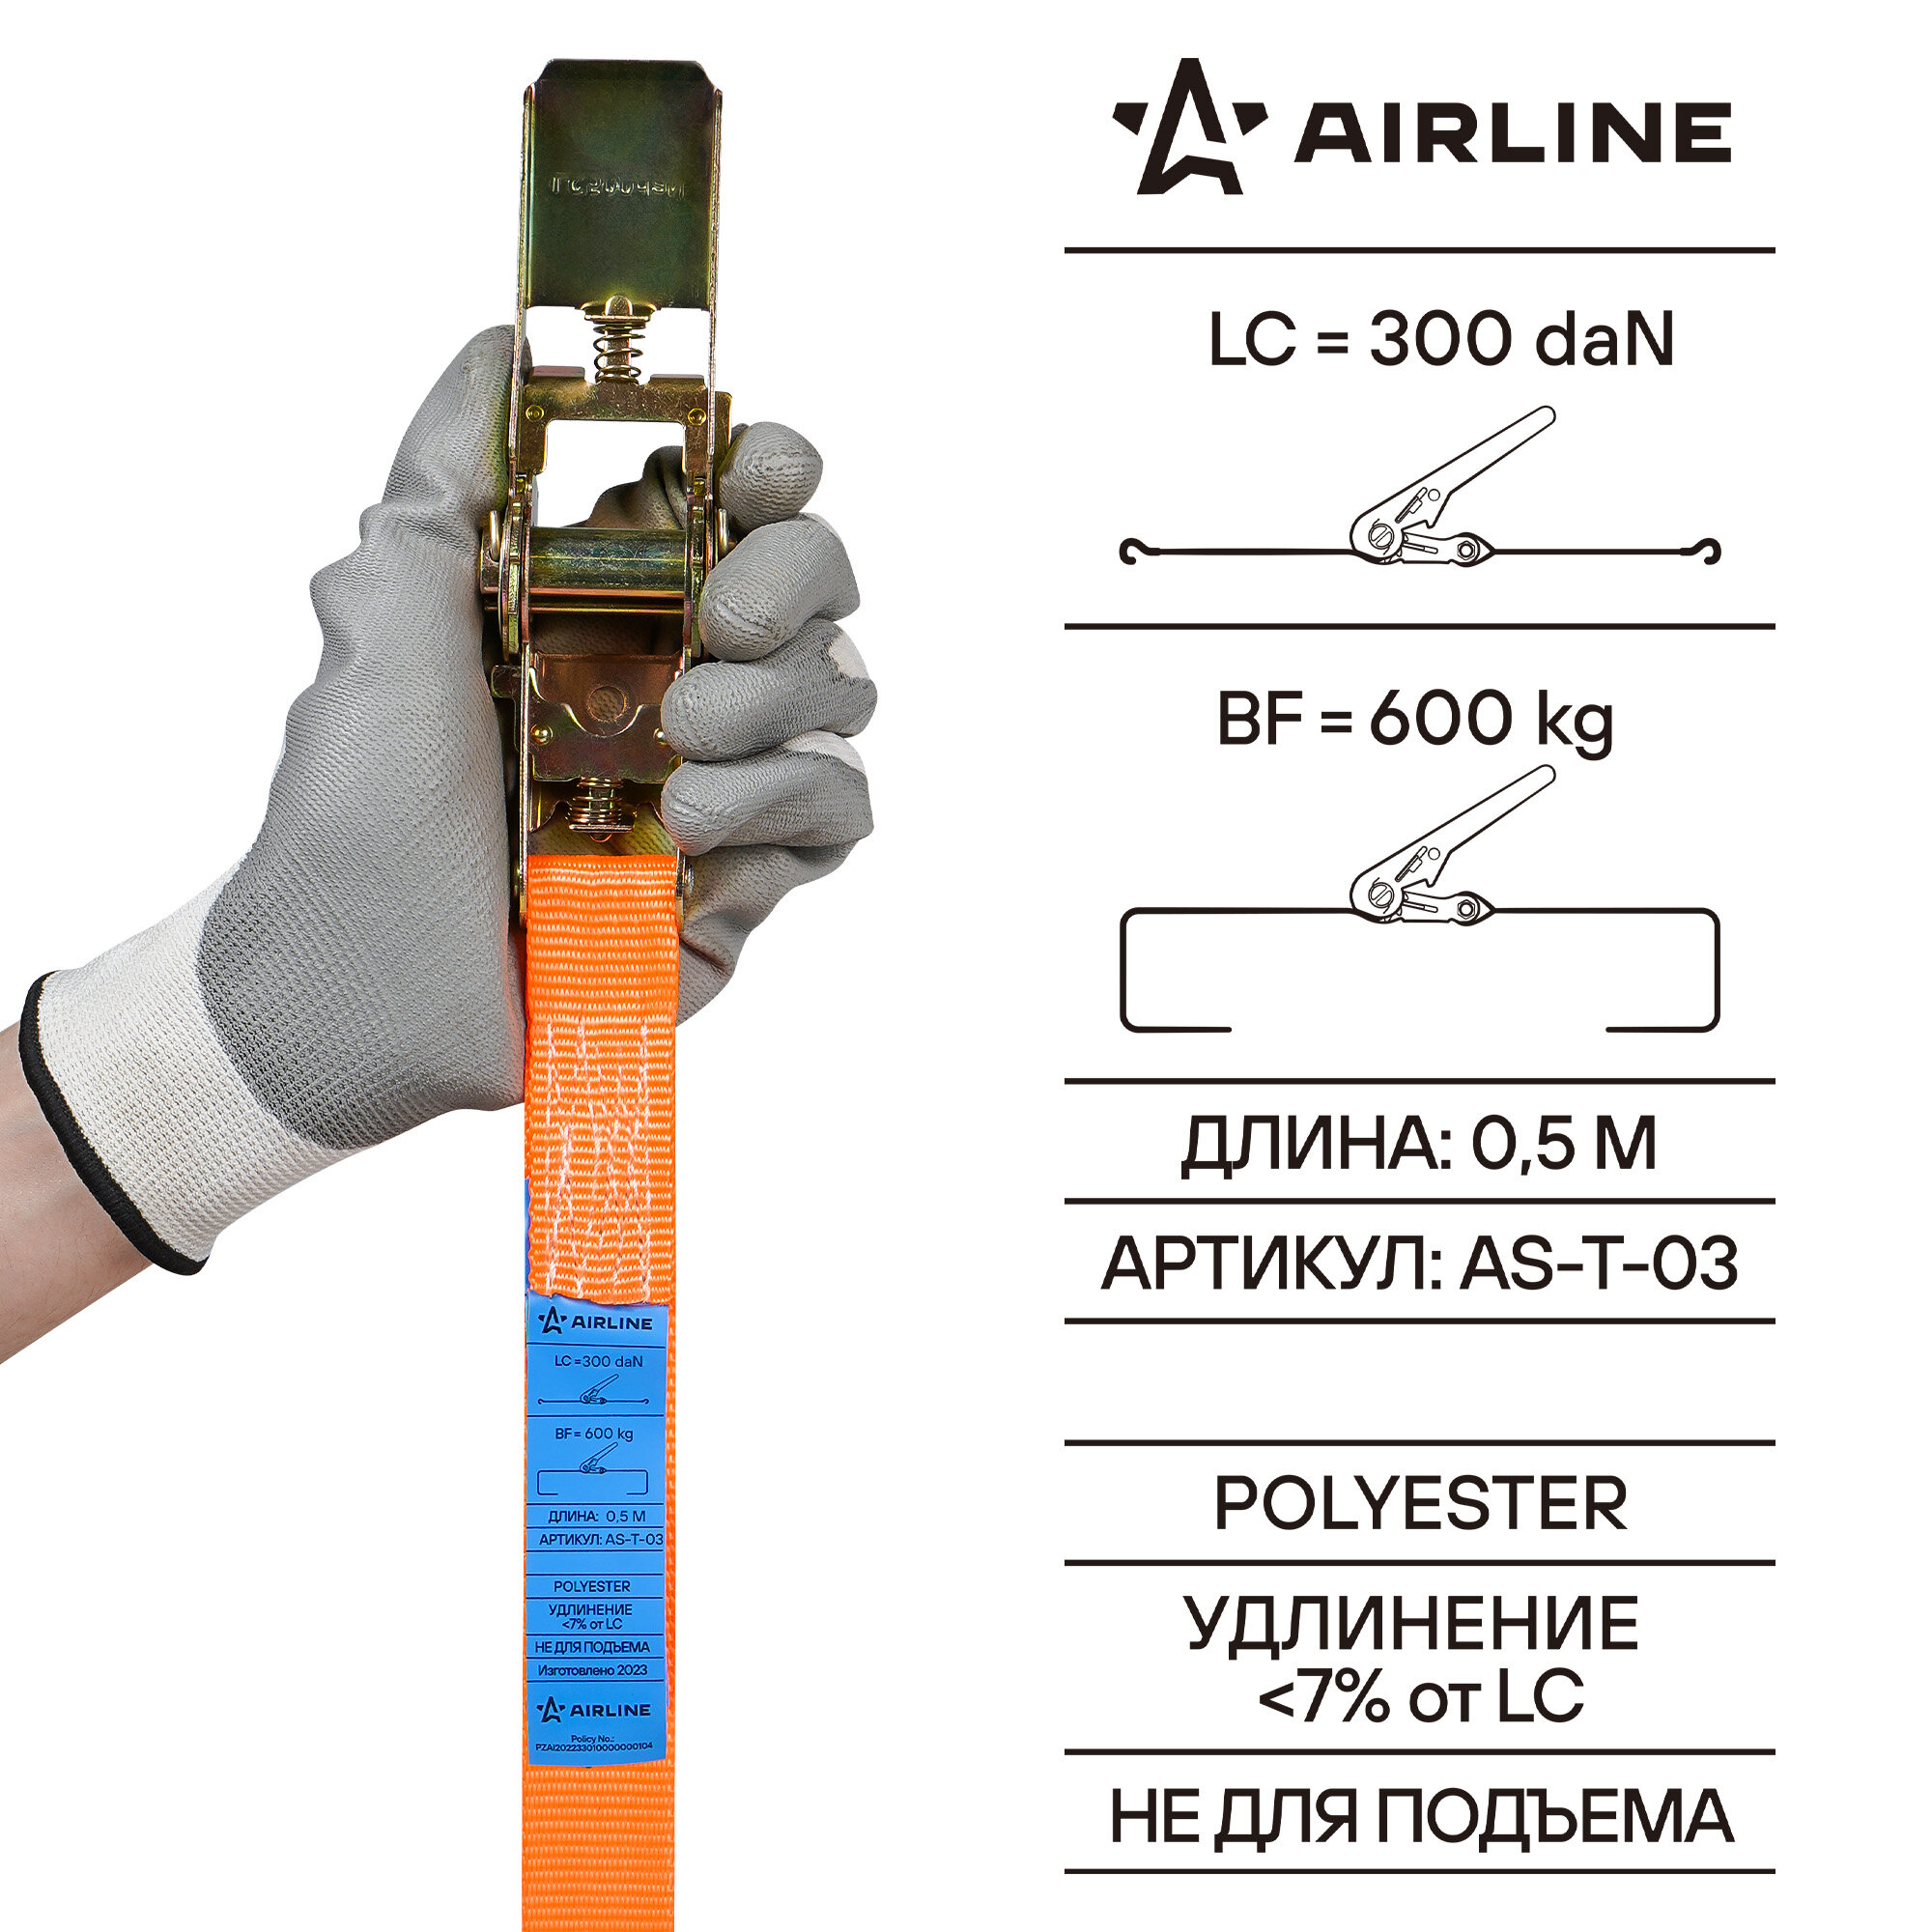 Наматывающее устройство с крюками AIRLINE AS-T-03 06 т